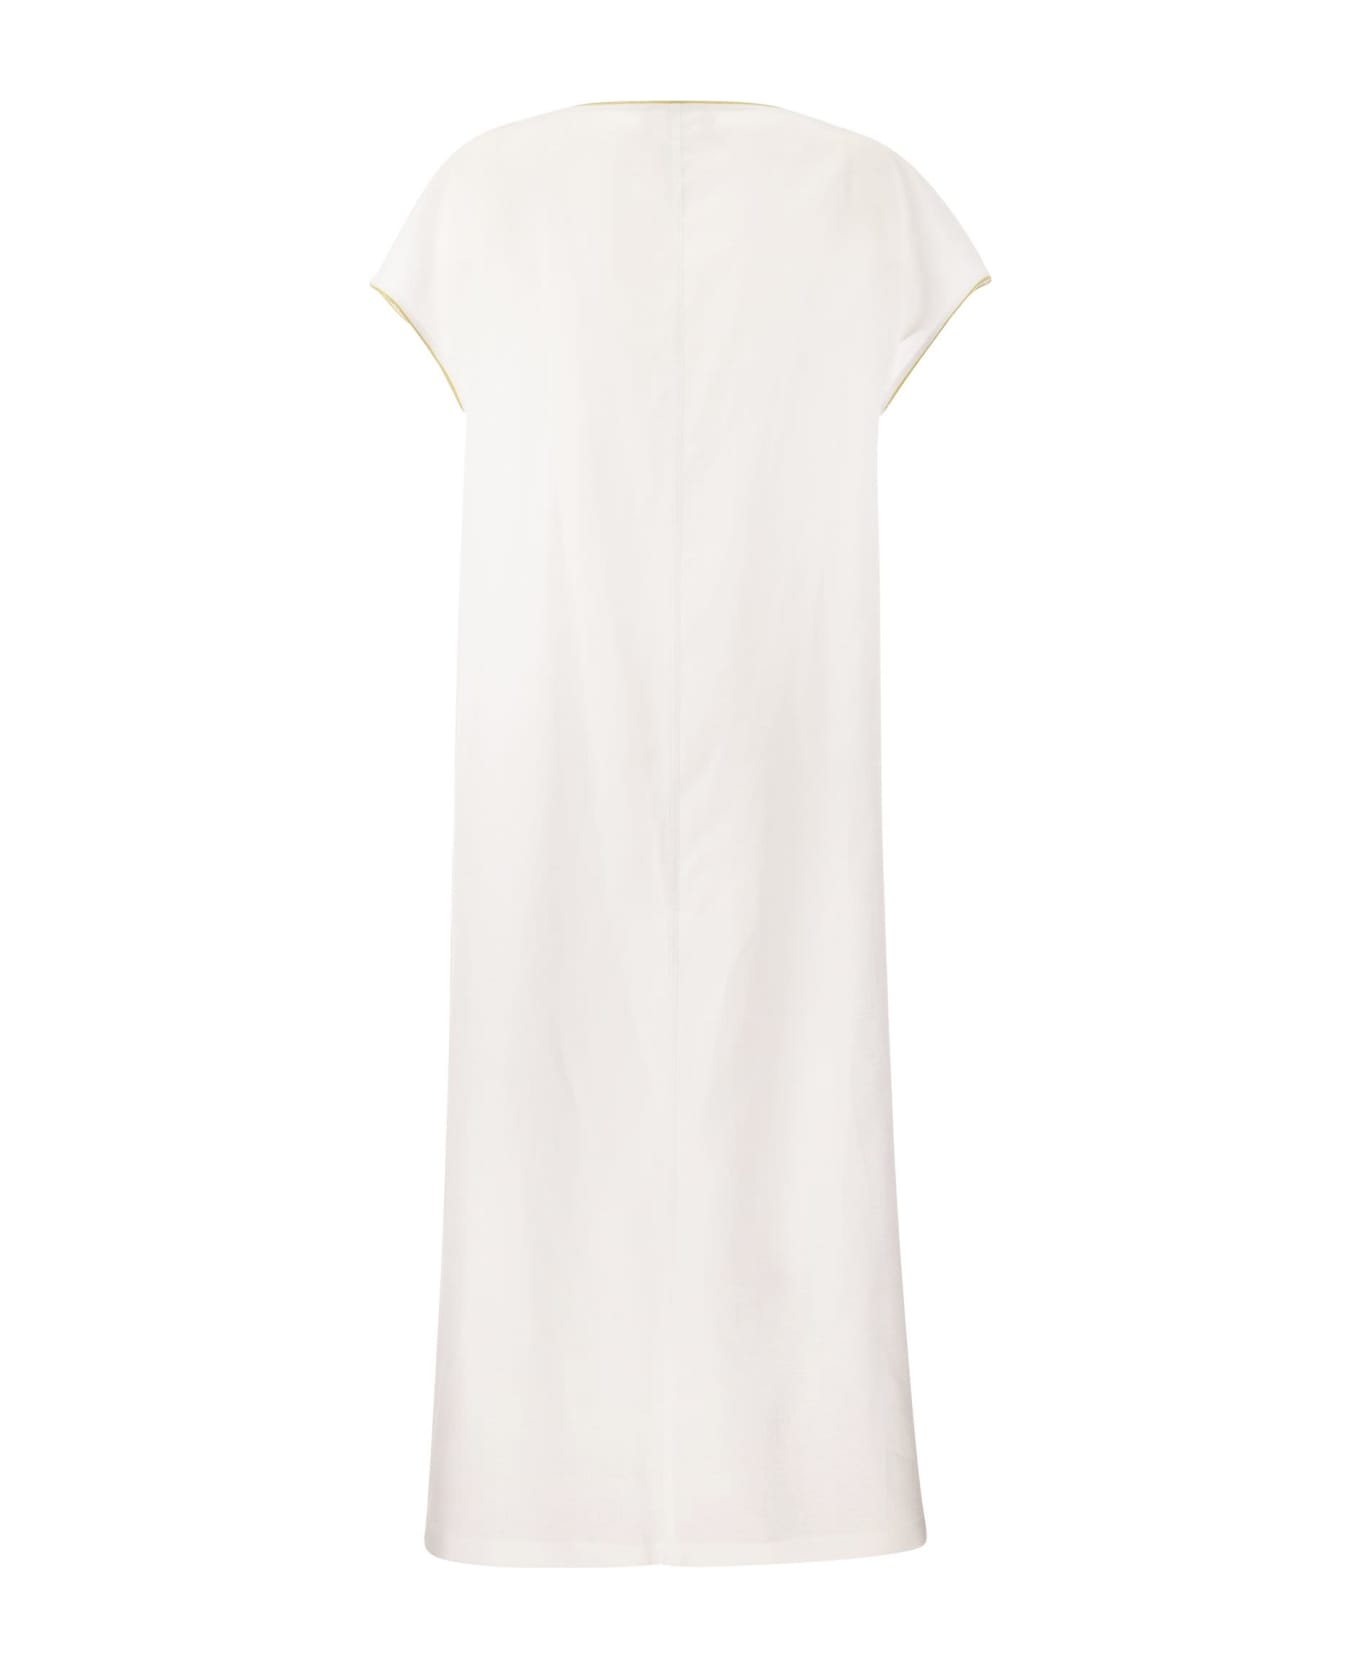 Fabiana Filippi Linen V-neck Dress - White